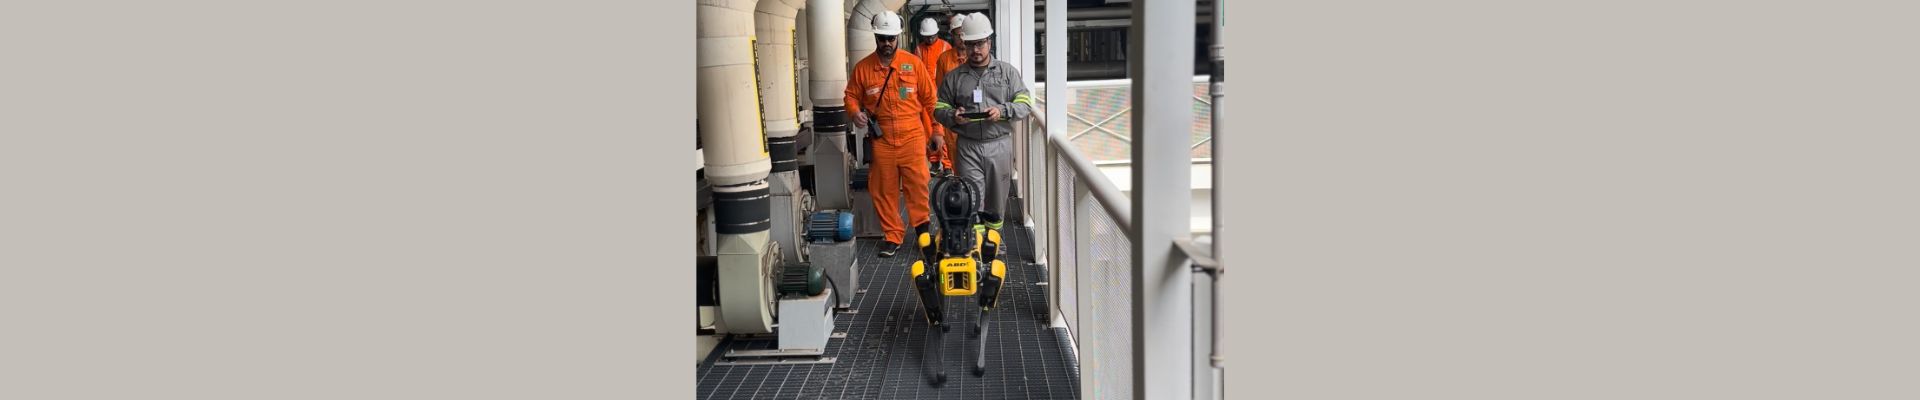 Cão-robô, testado na Petrobras, abre espaço para expansão da tecnologia no Brasil